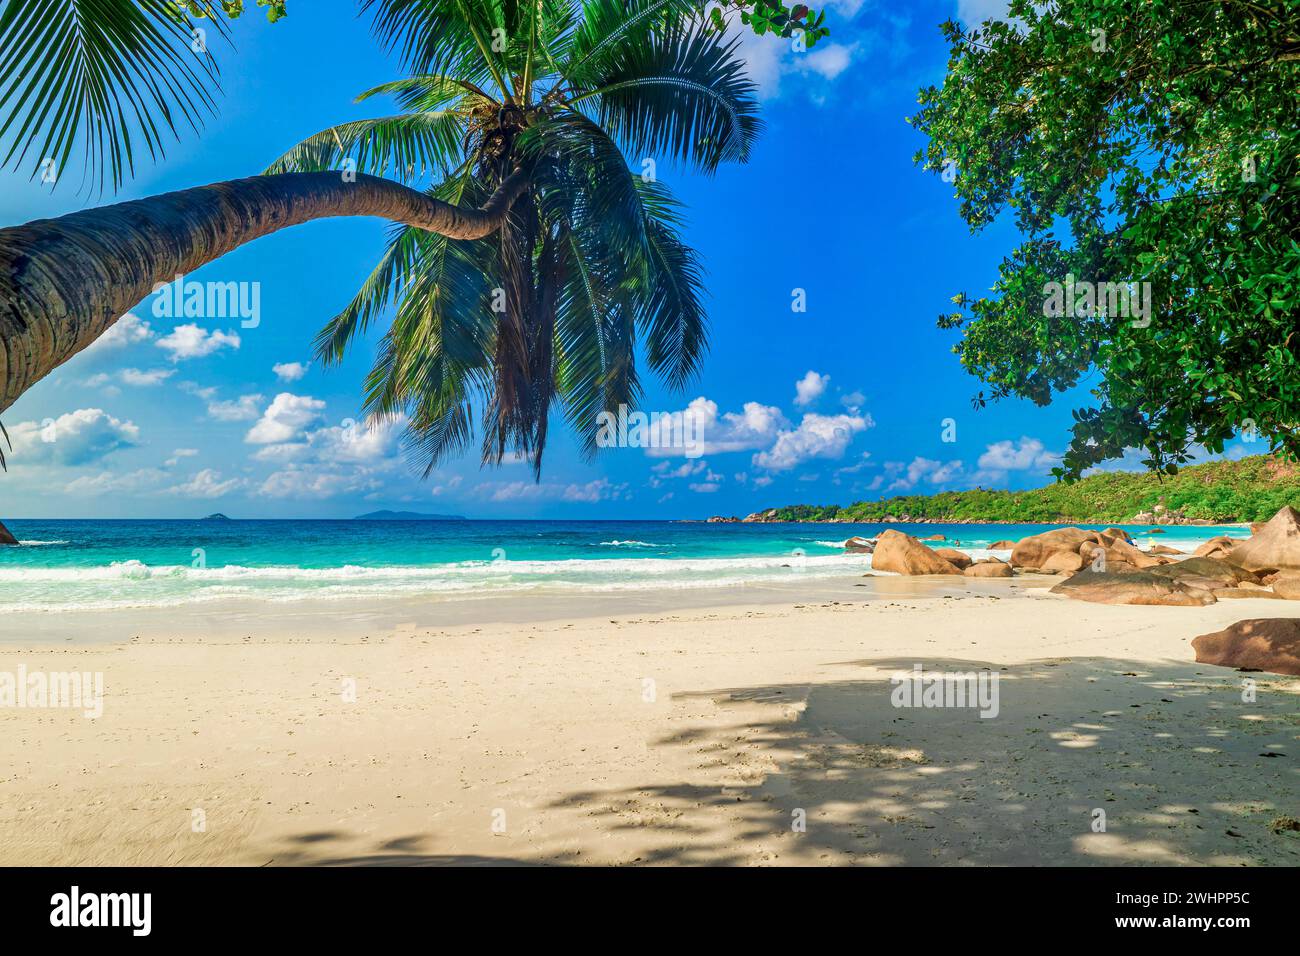 La plage Anse Lazio, Praslin - Île des Seychelles, Océan Indien, Afrique Banque D'Images